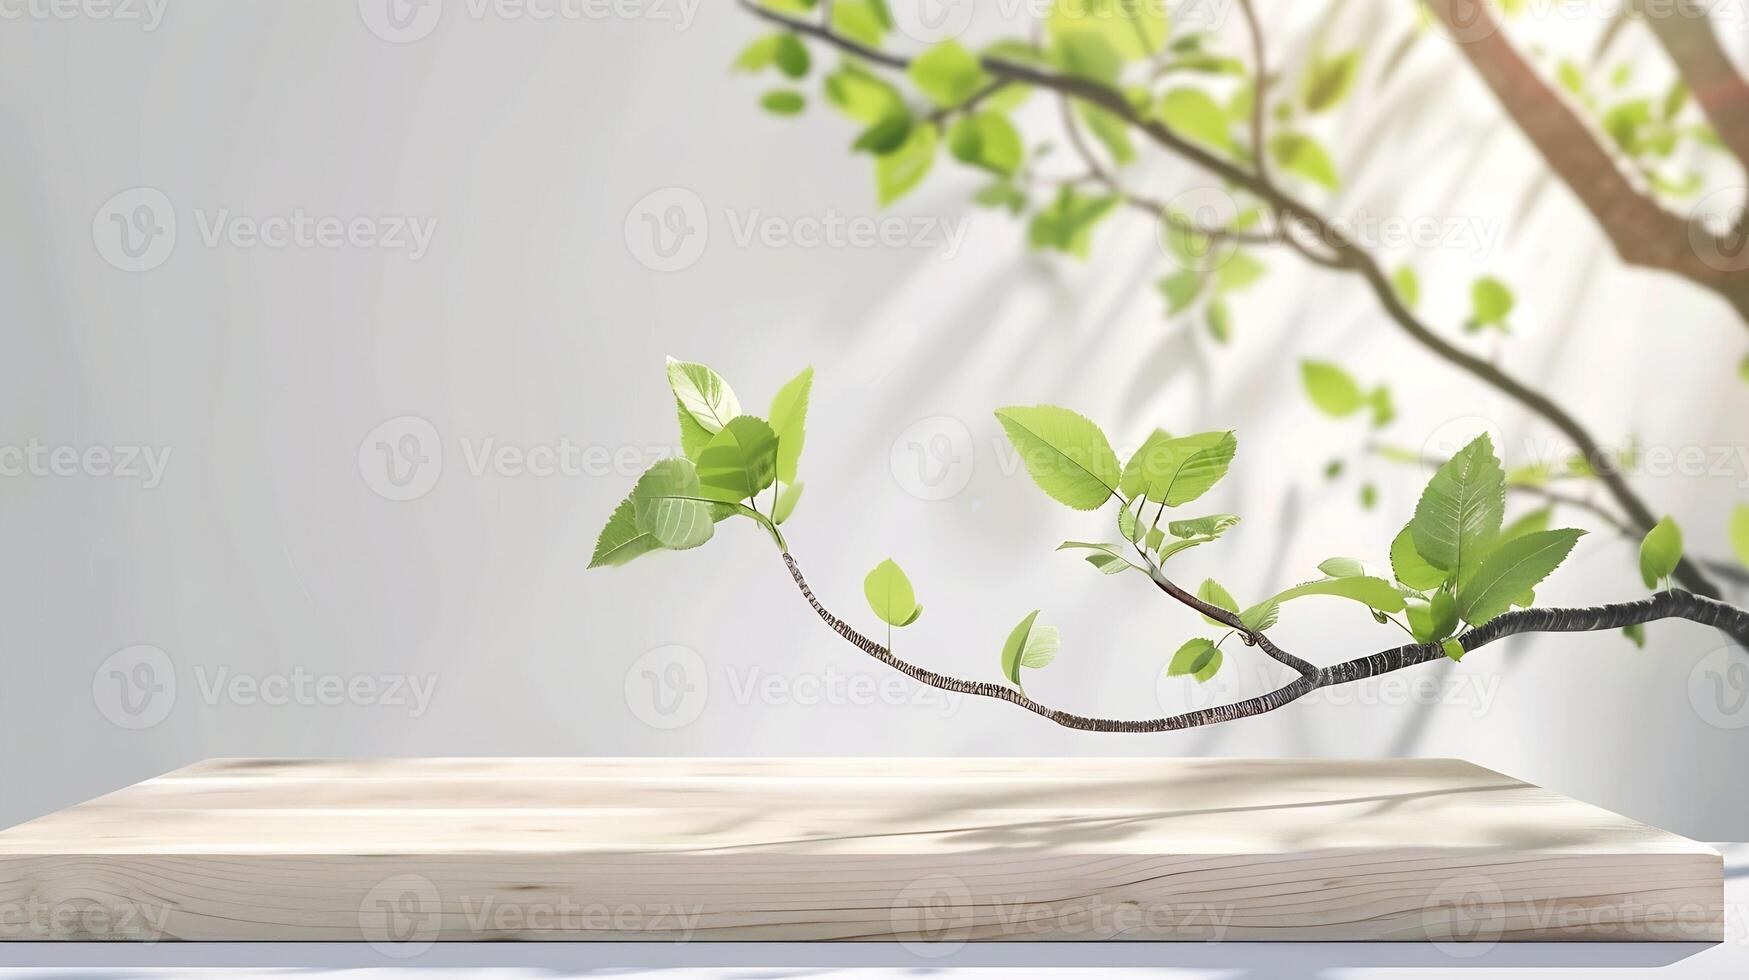 legna podio tavolo pavimento con albero rami verde foglia su bianca sfondobellezza cosmetico e salutare naturale Prodotto posizionamento piedistallo piattaforma vetrina In piedi displayspring o foto